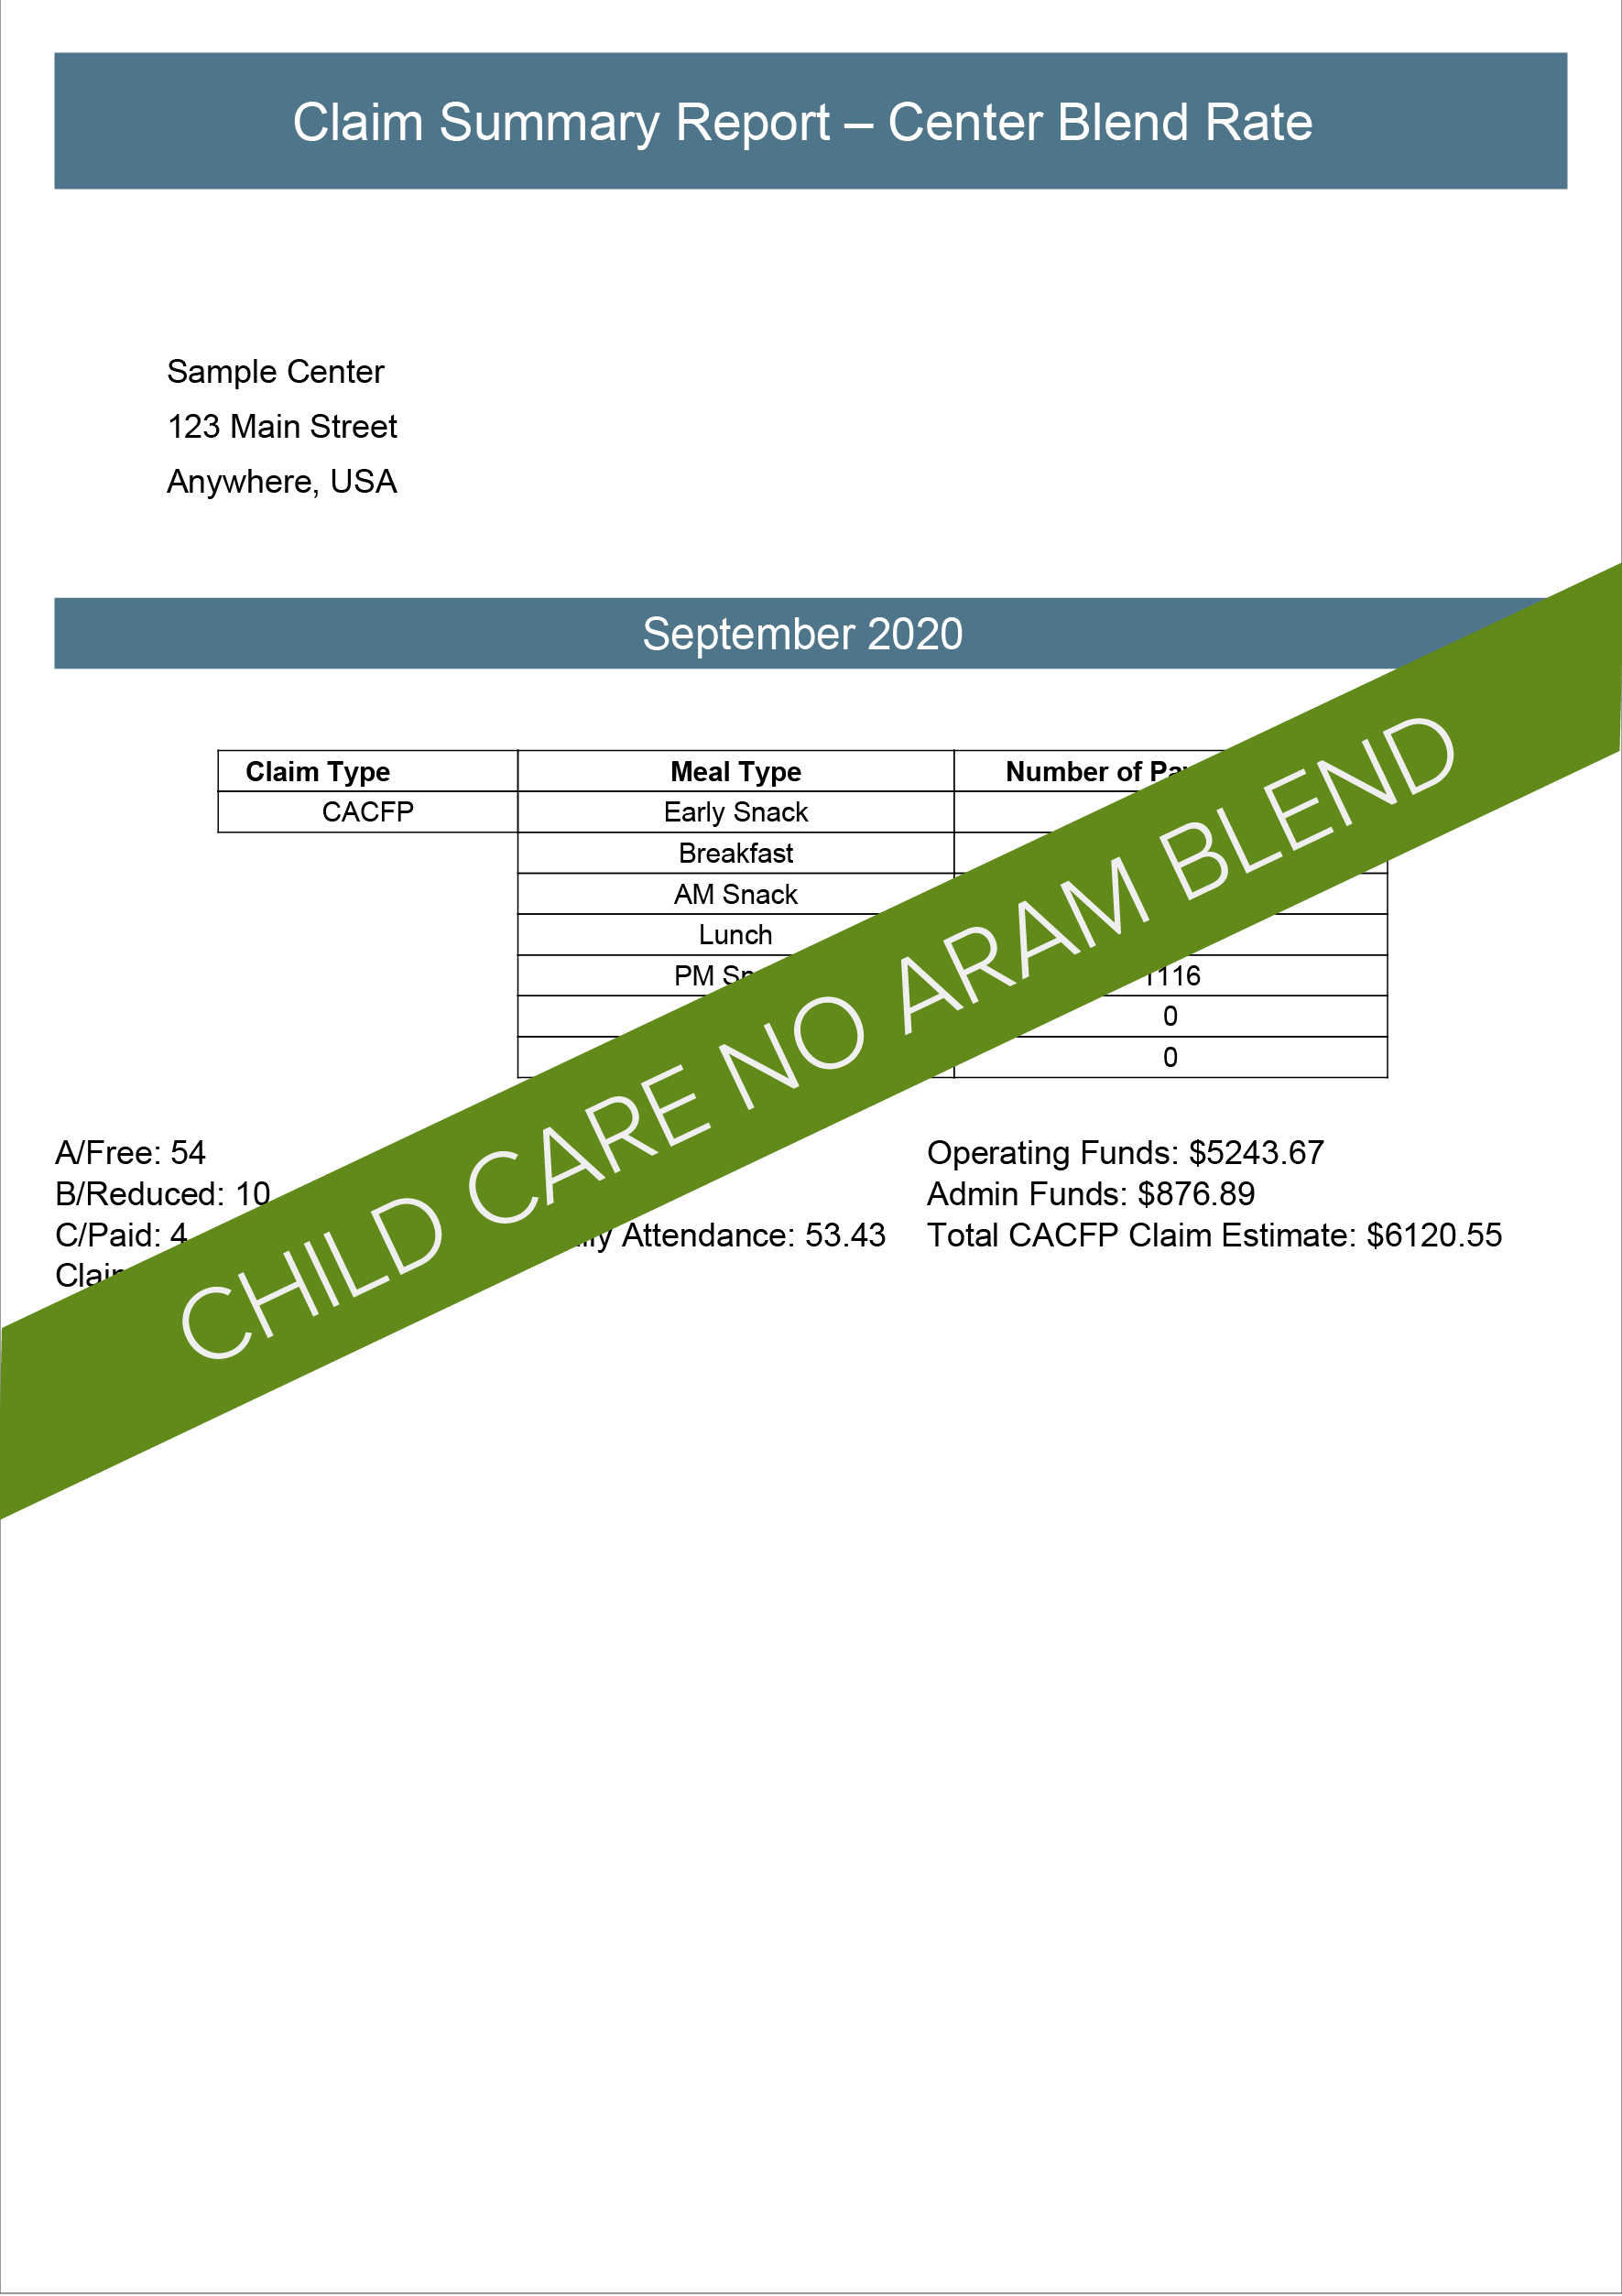 Child Care No ARAM Blend